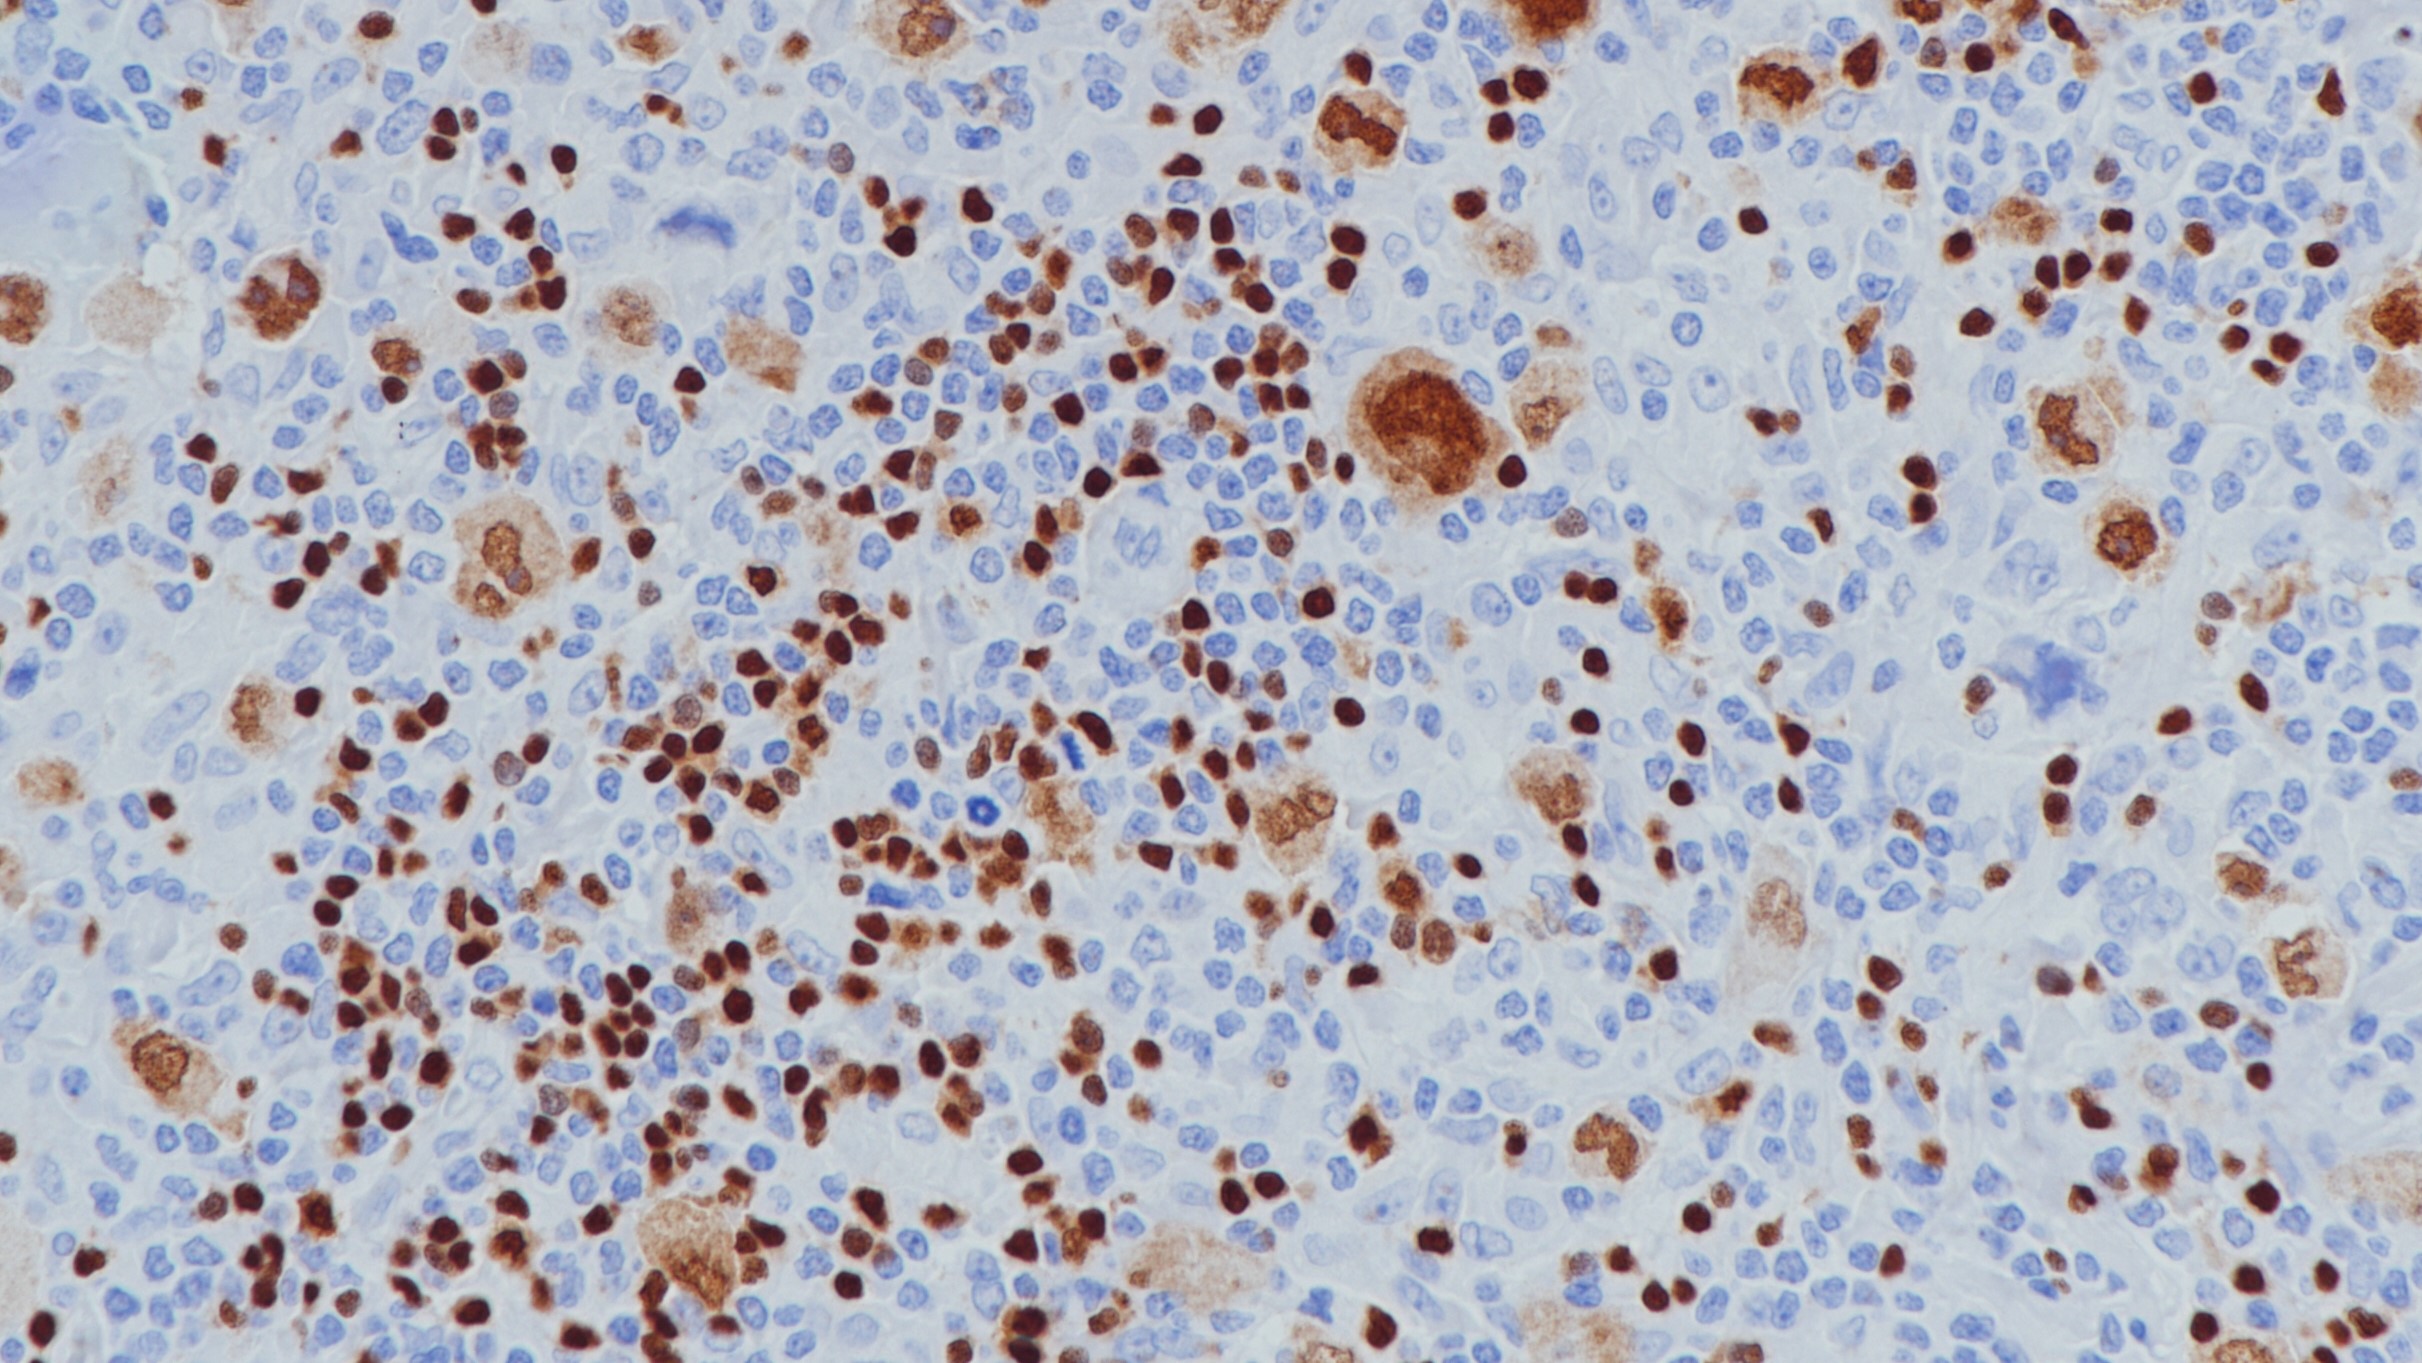 霍奇金淋巴瘤Pax-5(BPM6172)染色